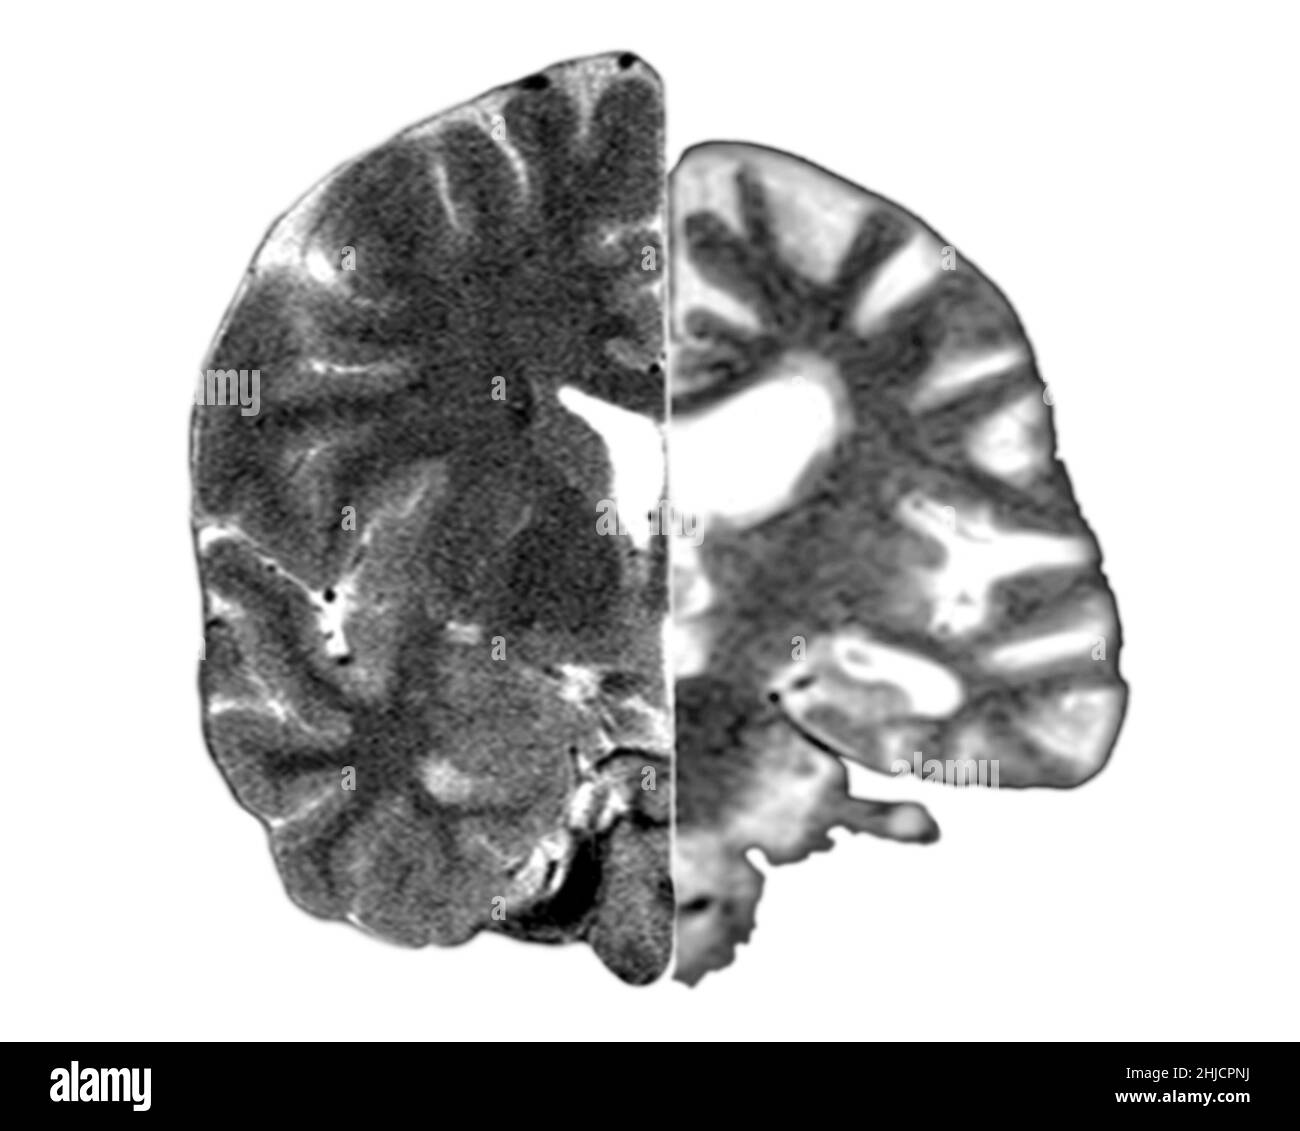 Ein zusammengesetztes Bild, das ein normales koronales (frontales) Querschnitt-MRT-Bild des Gehirns (links) mit einem koronalen MRT-Bild eines Gehirns mit fortgeschrittener Alzheimer-Krankheit (rechts) zeigt. Das erkrankte Gehirn zeigt eine schwere generalisierte Atrophie (Schrumpfung) des Hirngewebes mit einem akzentuierten Gewebeverlust, der die Schläfenlappen einbezieht. Stockfoto